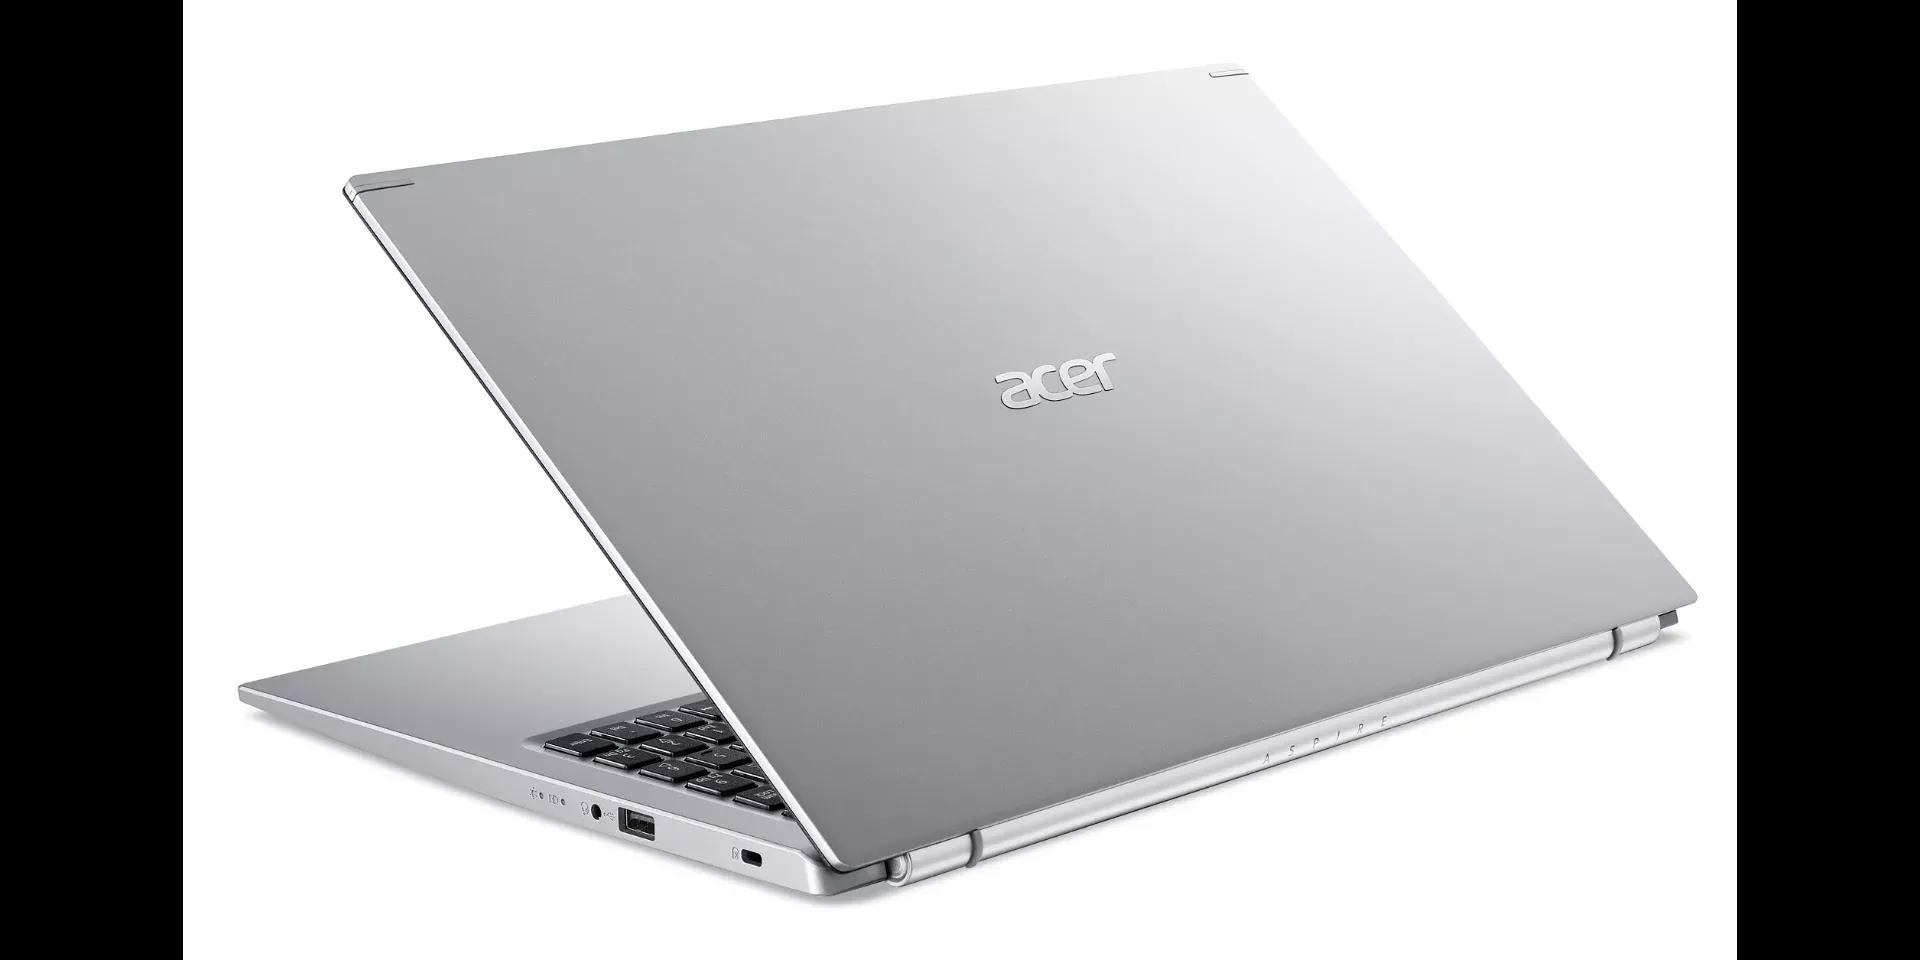 Acer Aspire 5 2021 11th Gen i3 | 4GB RAM | 1TB HDD | 15.6" HD Display